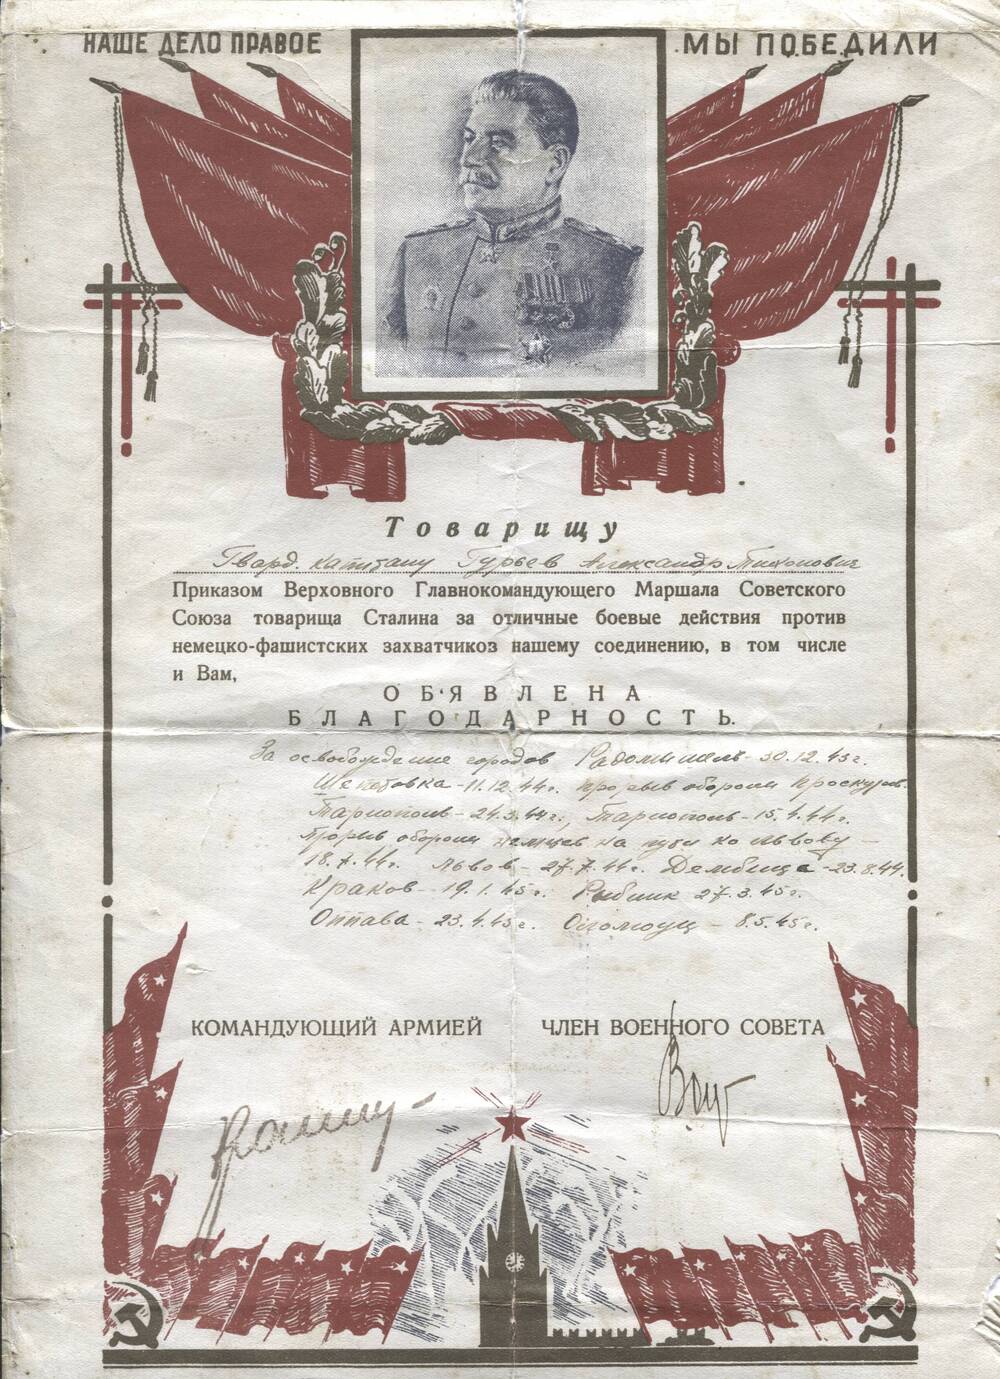 Благодарность гвардии капитану Гурьеву Александру Тихоновичу за освобождение ряда городов в 1943-1945 гг.